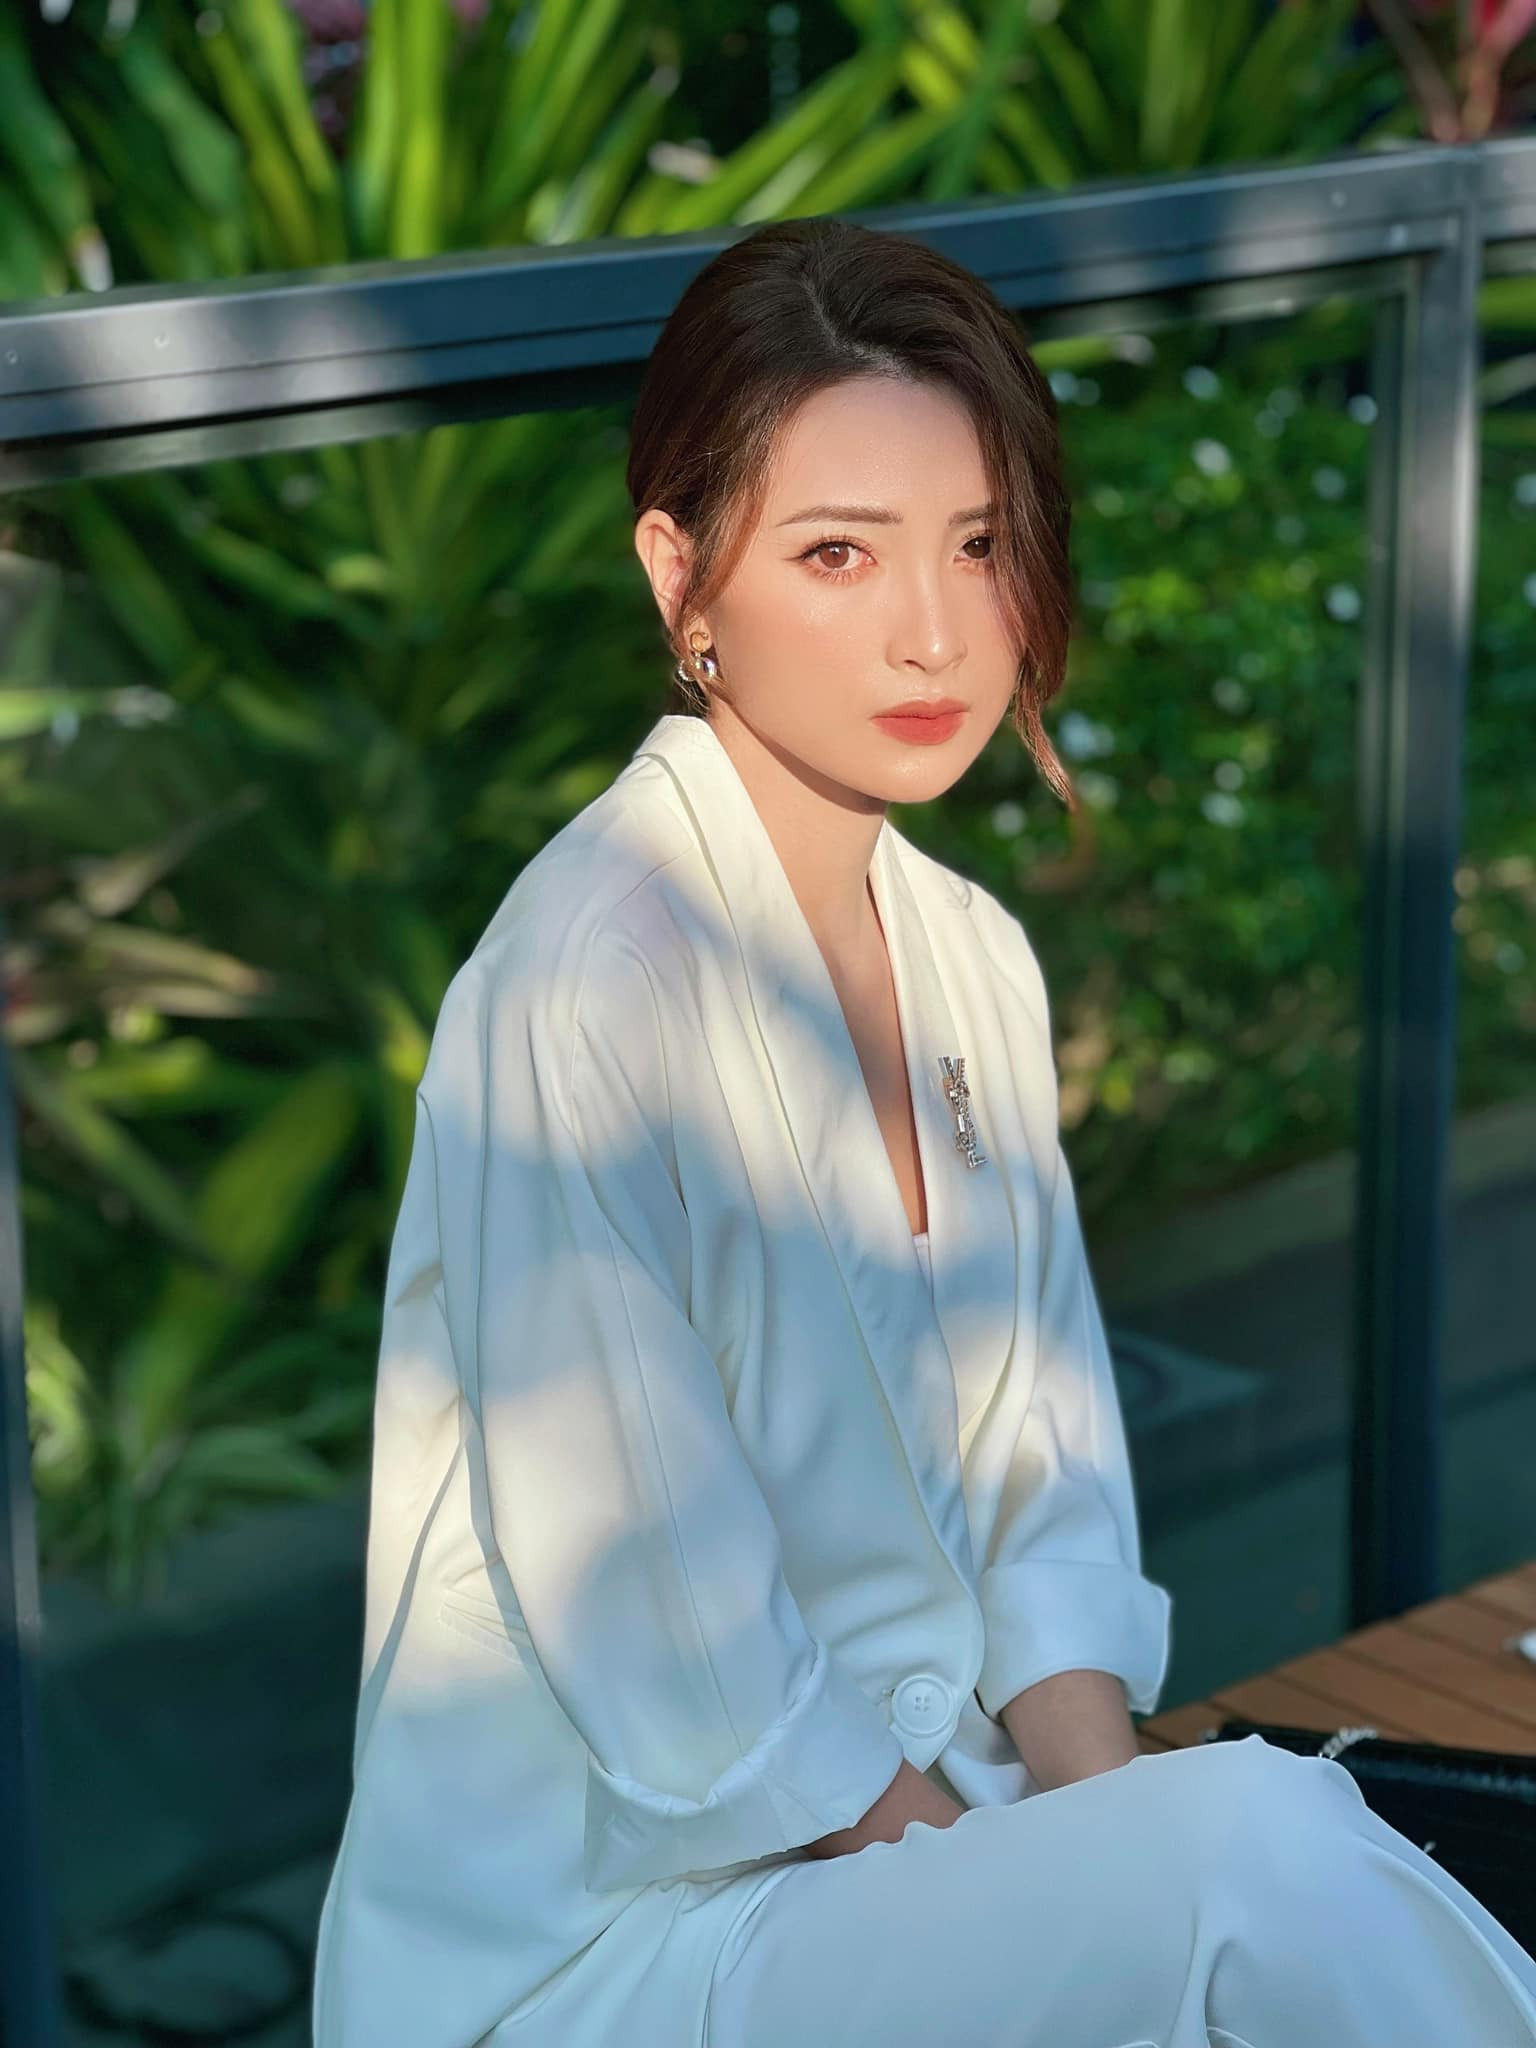 MC Huyền Trang VTV đóng vai bác sĩ pháp y táo bạo trong 'Biệt dược đen'